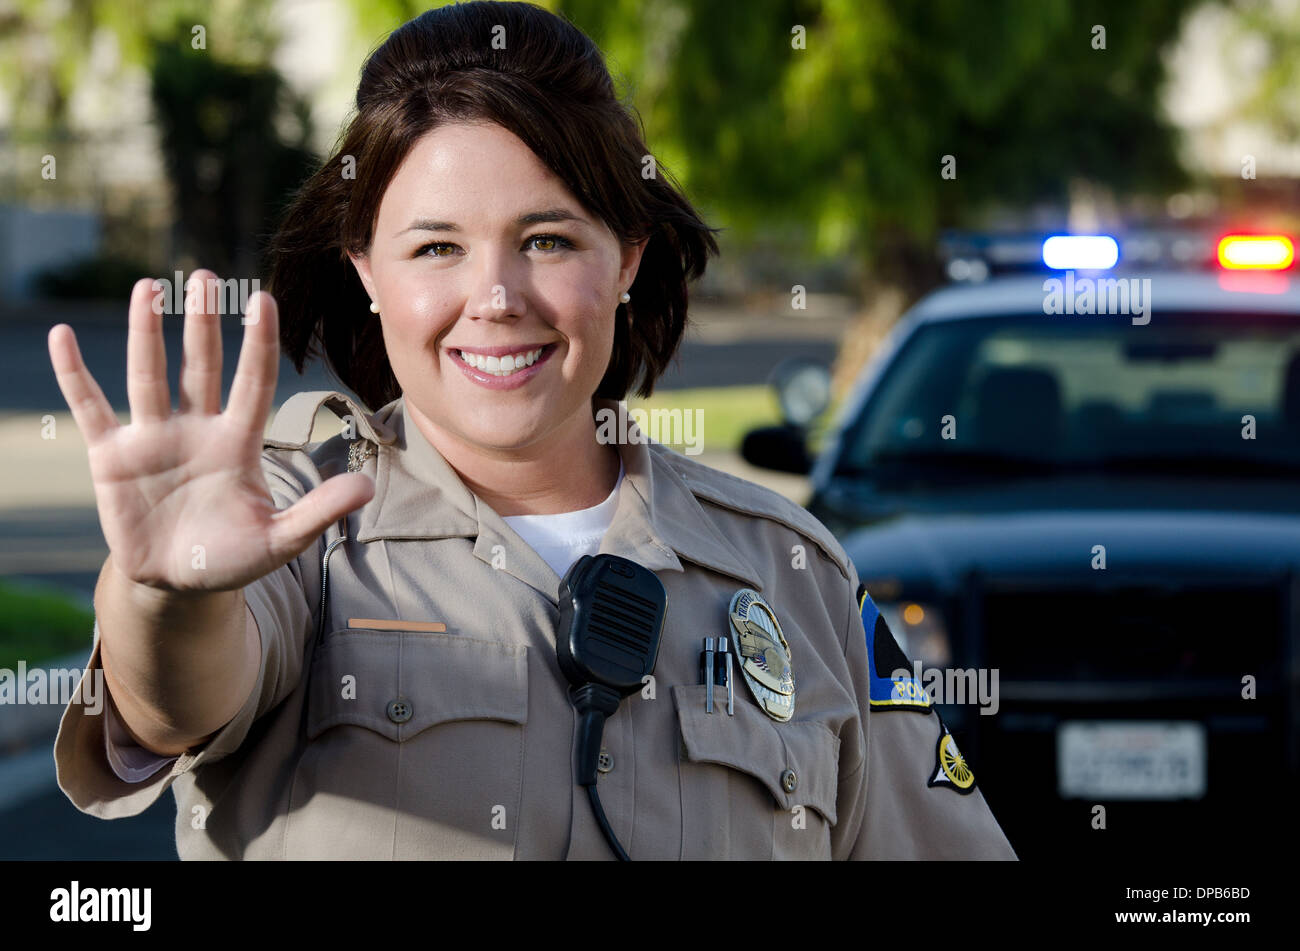 Una femmina sorridente funzionario di polizia trattiene la sua mano per ottenere il traffico per interrompere. Foto Stock